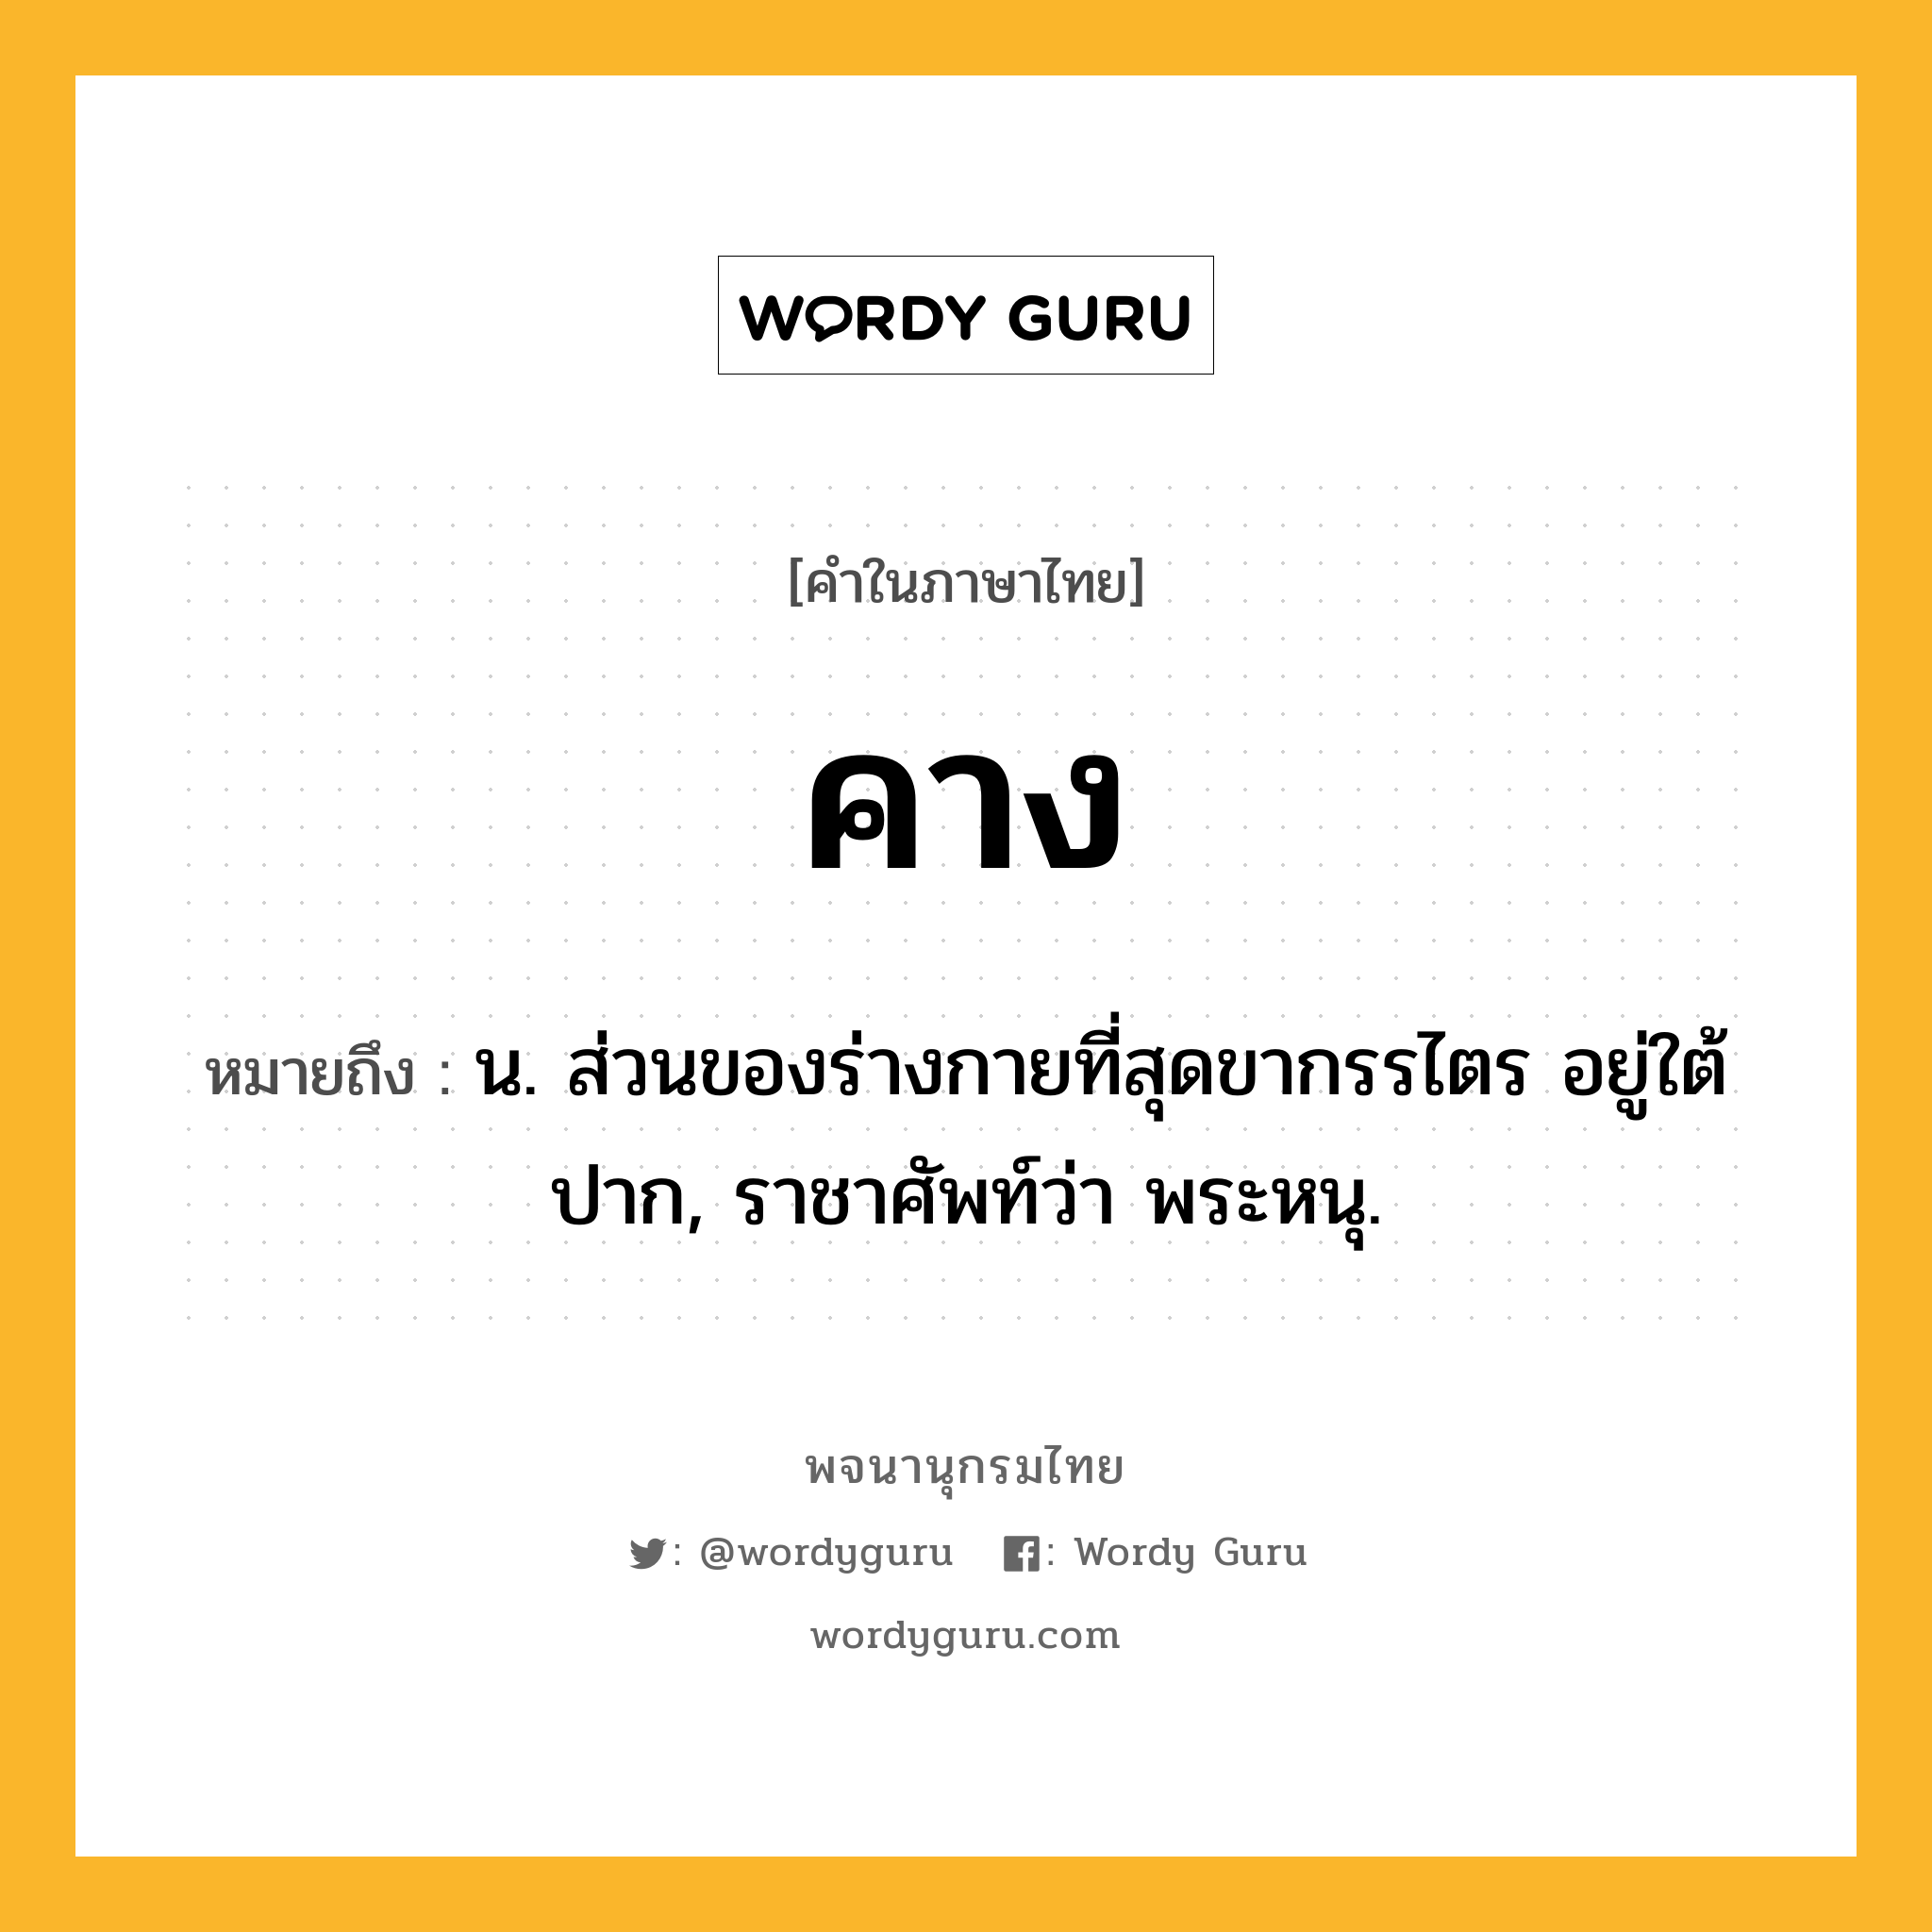 คาง ความหมาย หมายถึงอะไร?, คำในภาษาไทย คาง หมายถึง น. ส่วนของร่างกายที่สุดขากรรไตร อยู่ใต้ปาก, ราชาศัพท์ว่า พระหนุ.